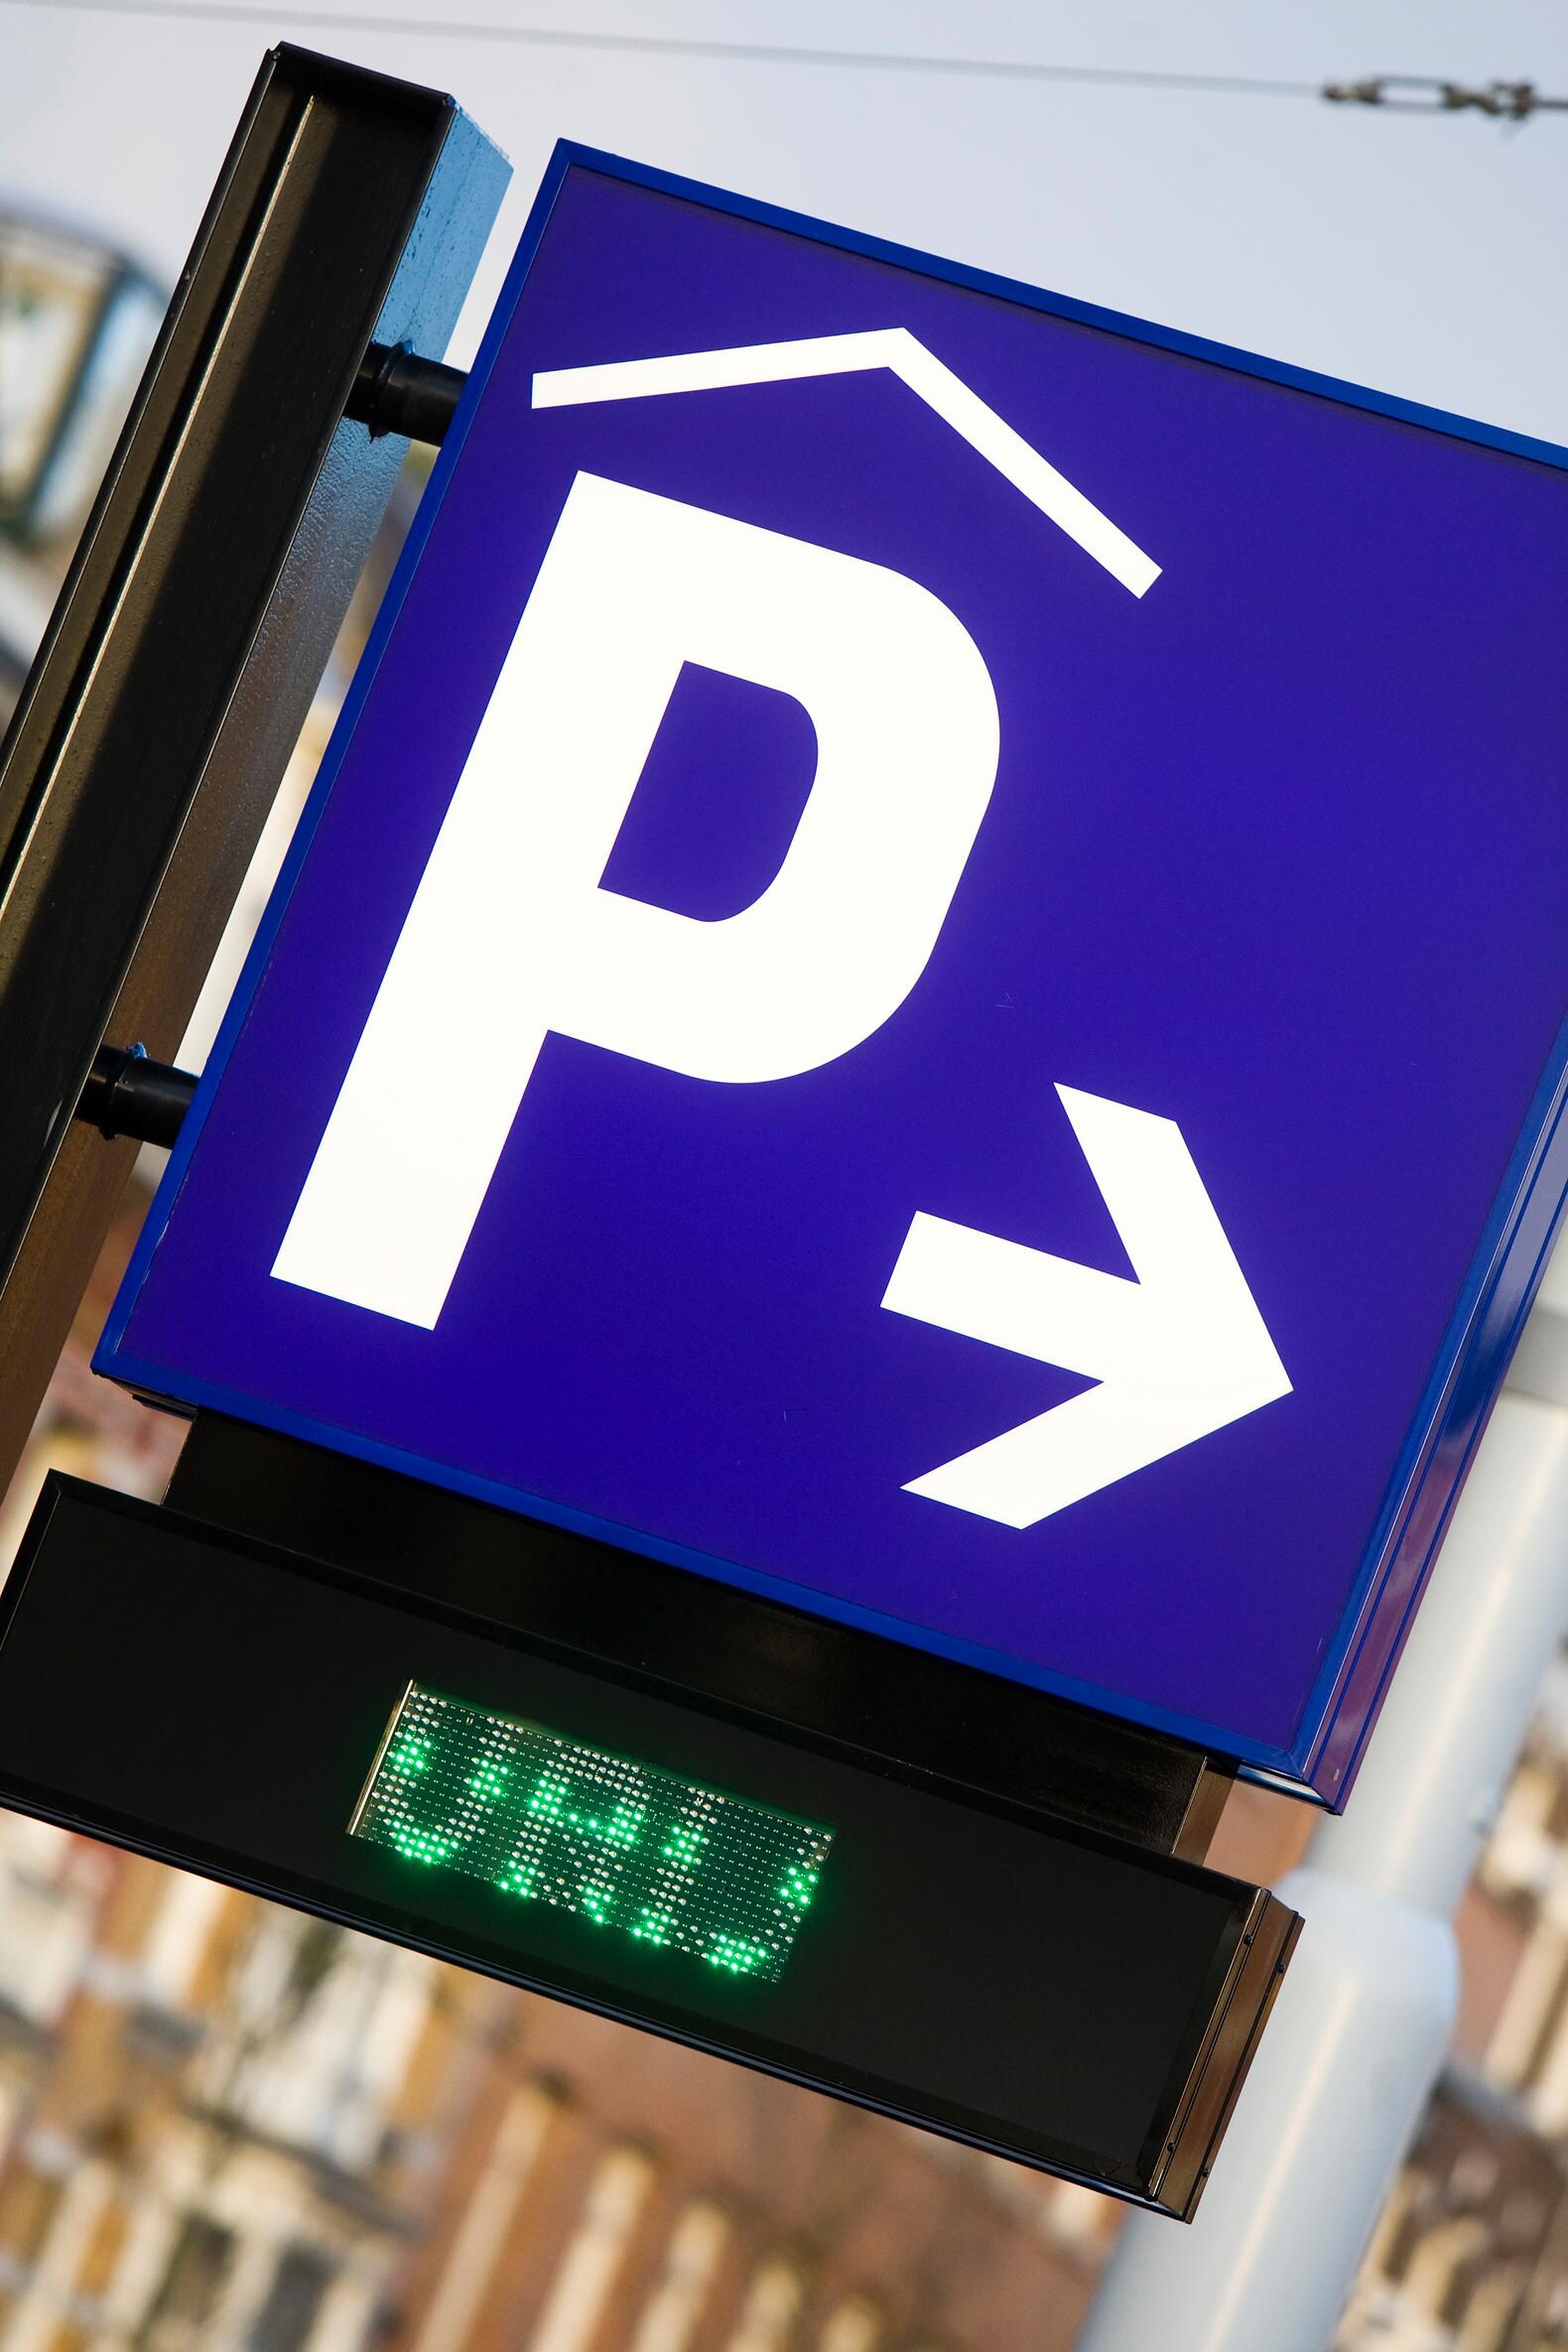 Gemeente wil parkeergarage Prins Hendrikkade kopen